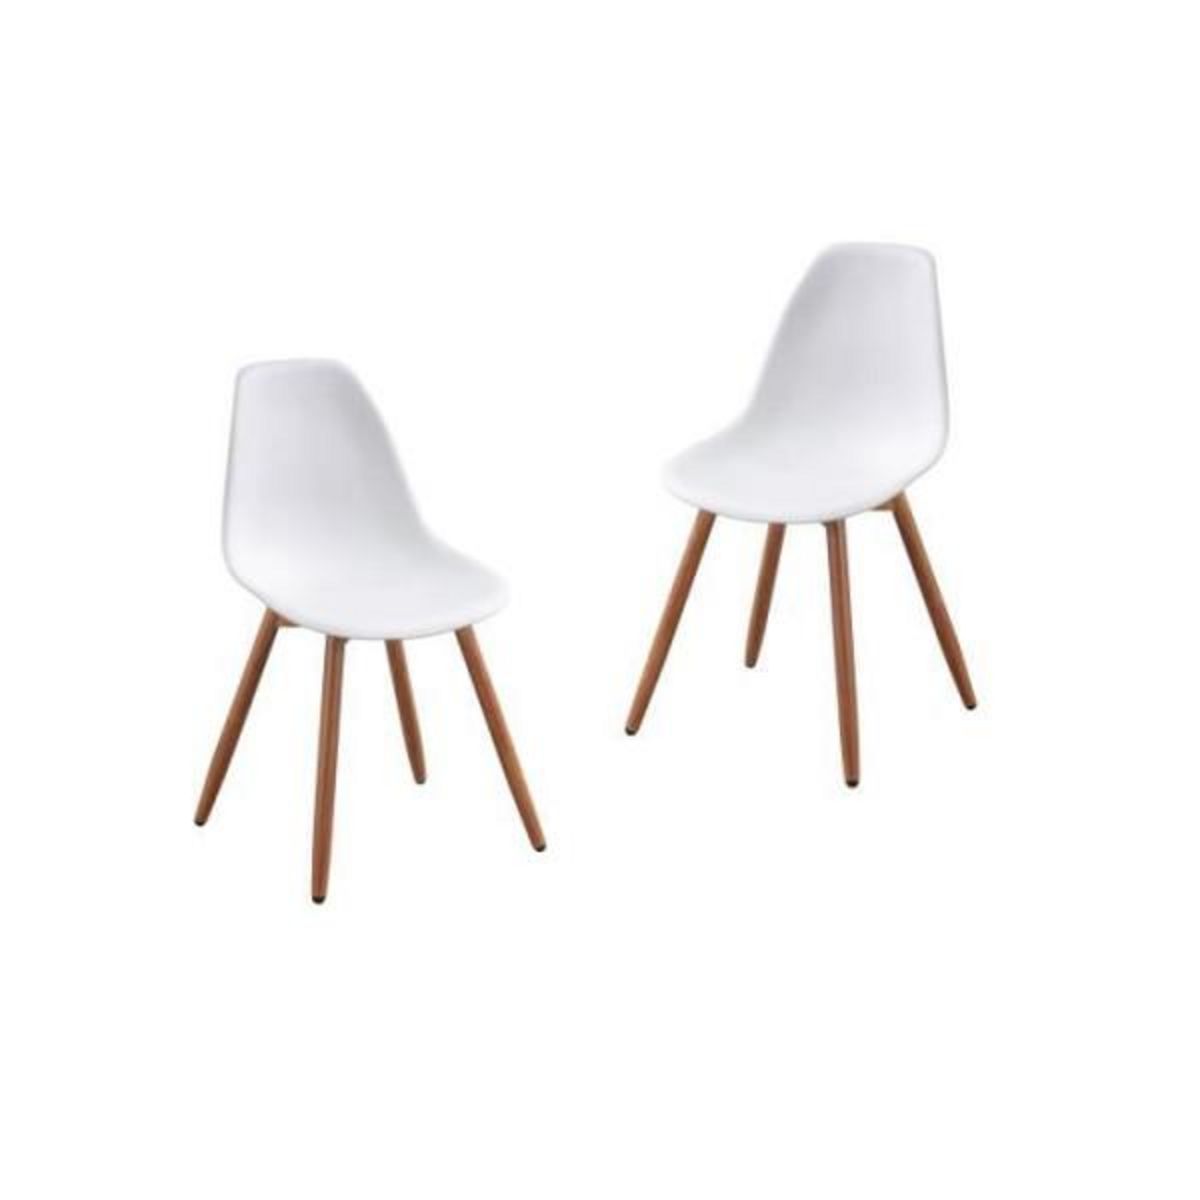  Lot de 2 chaises de jardin en PP - Blanc - 50 x 55 x 85,5 cm